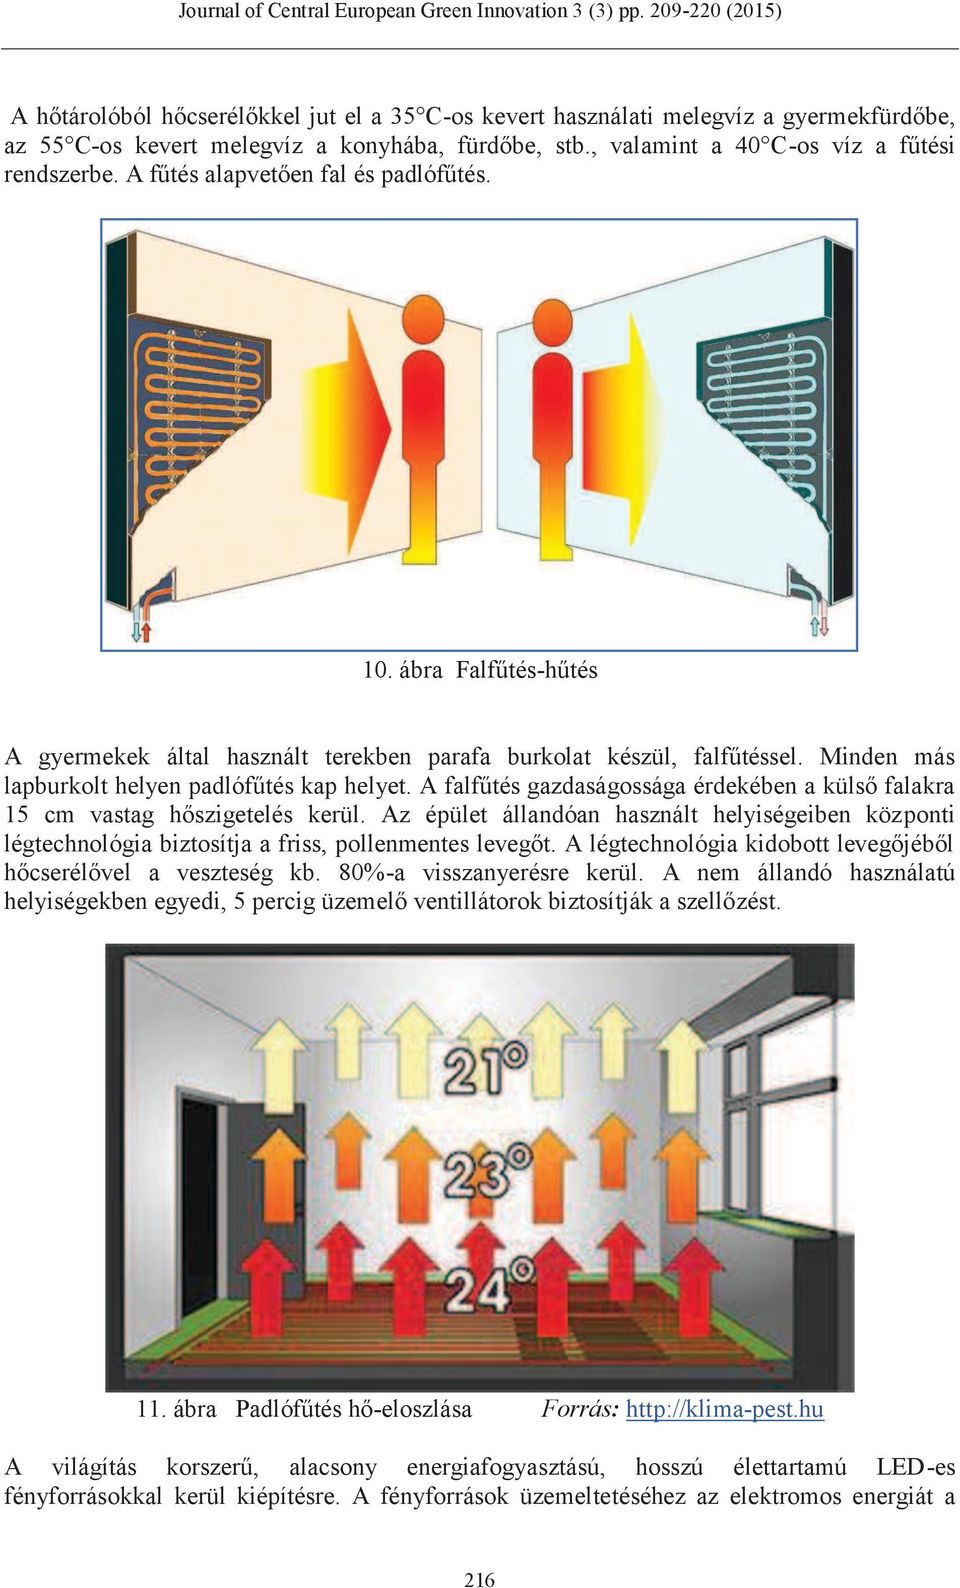 A falfűtés gazdaságossága érdekében a külső falakra 15 cm vastag hőszigetelés kerül. Az épület állandóan használt helyiségeiben központi légtechnológia biztosítja a friss, pollenmentes levegőt.